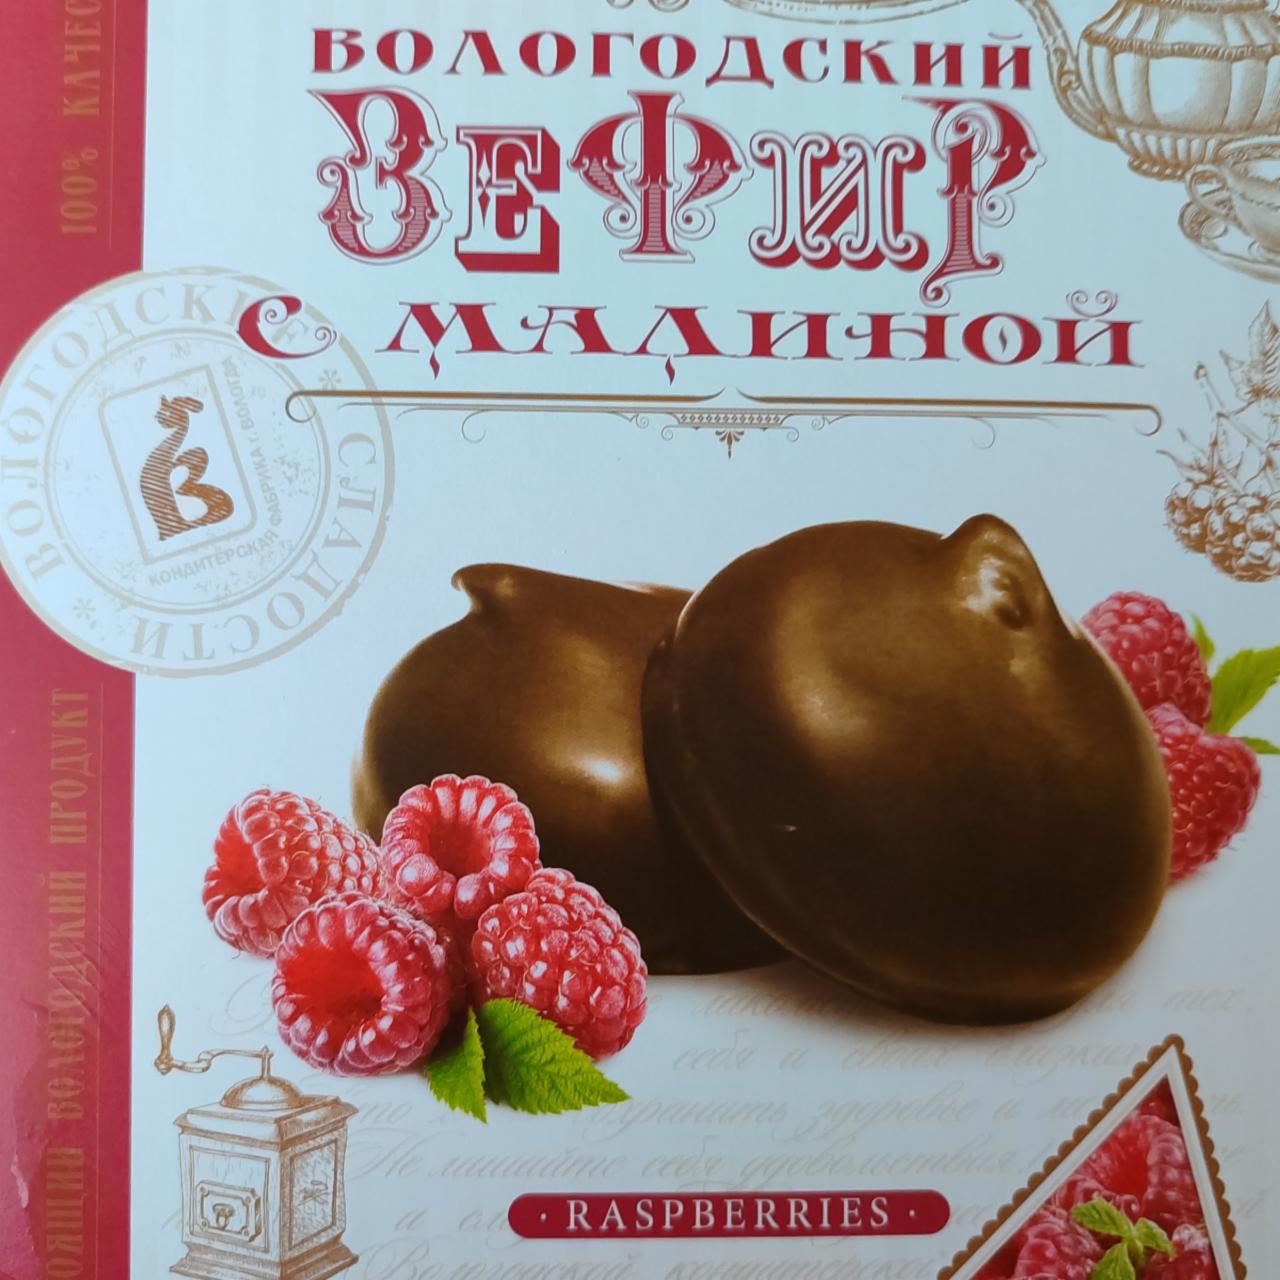 Фото - Вологодский зефир с малиной Вологодские сладости